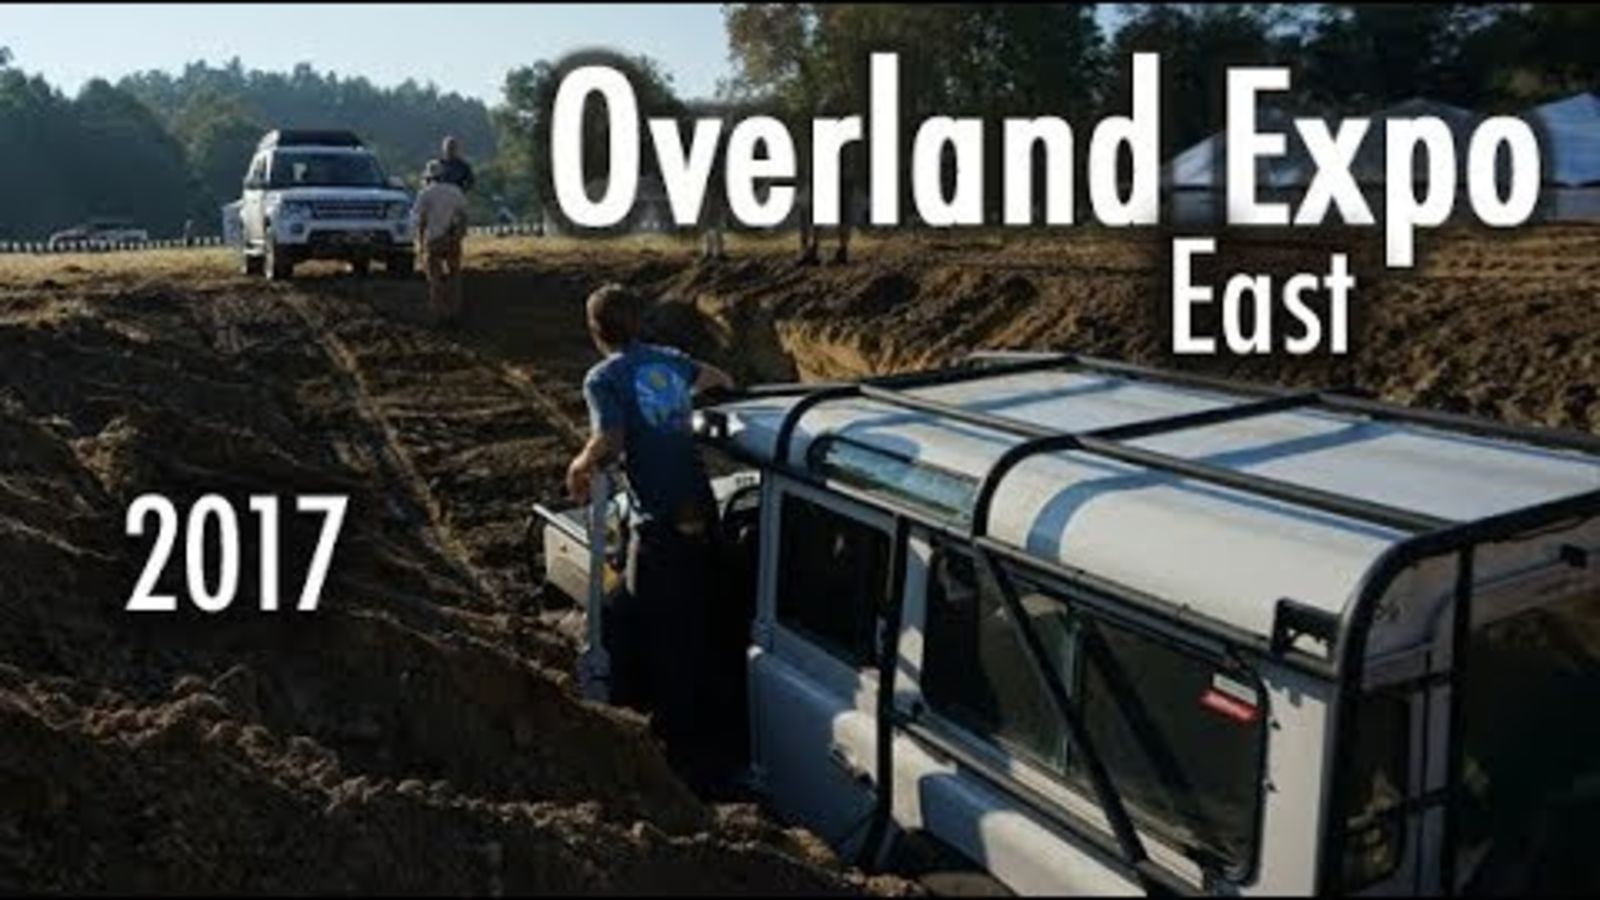 Illustration for article titled Best of Overland and Expedition - October 2017em/em